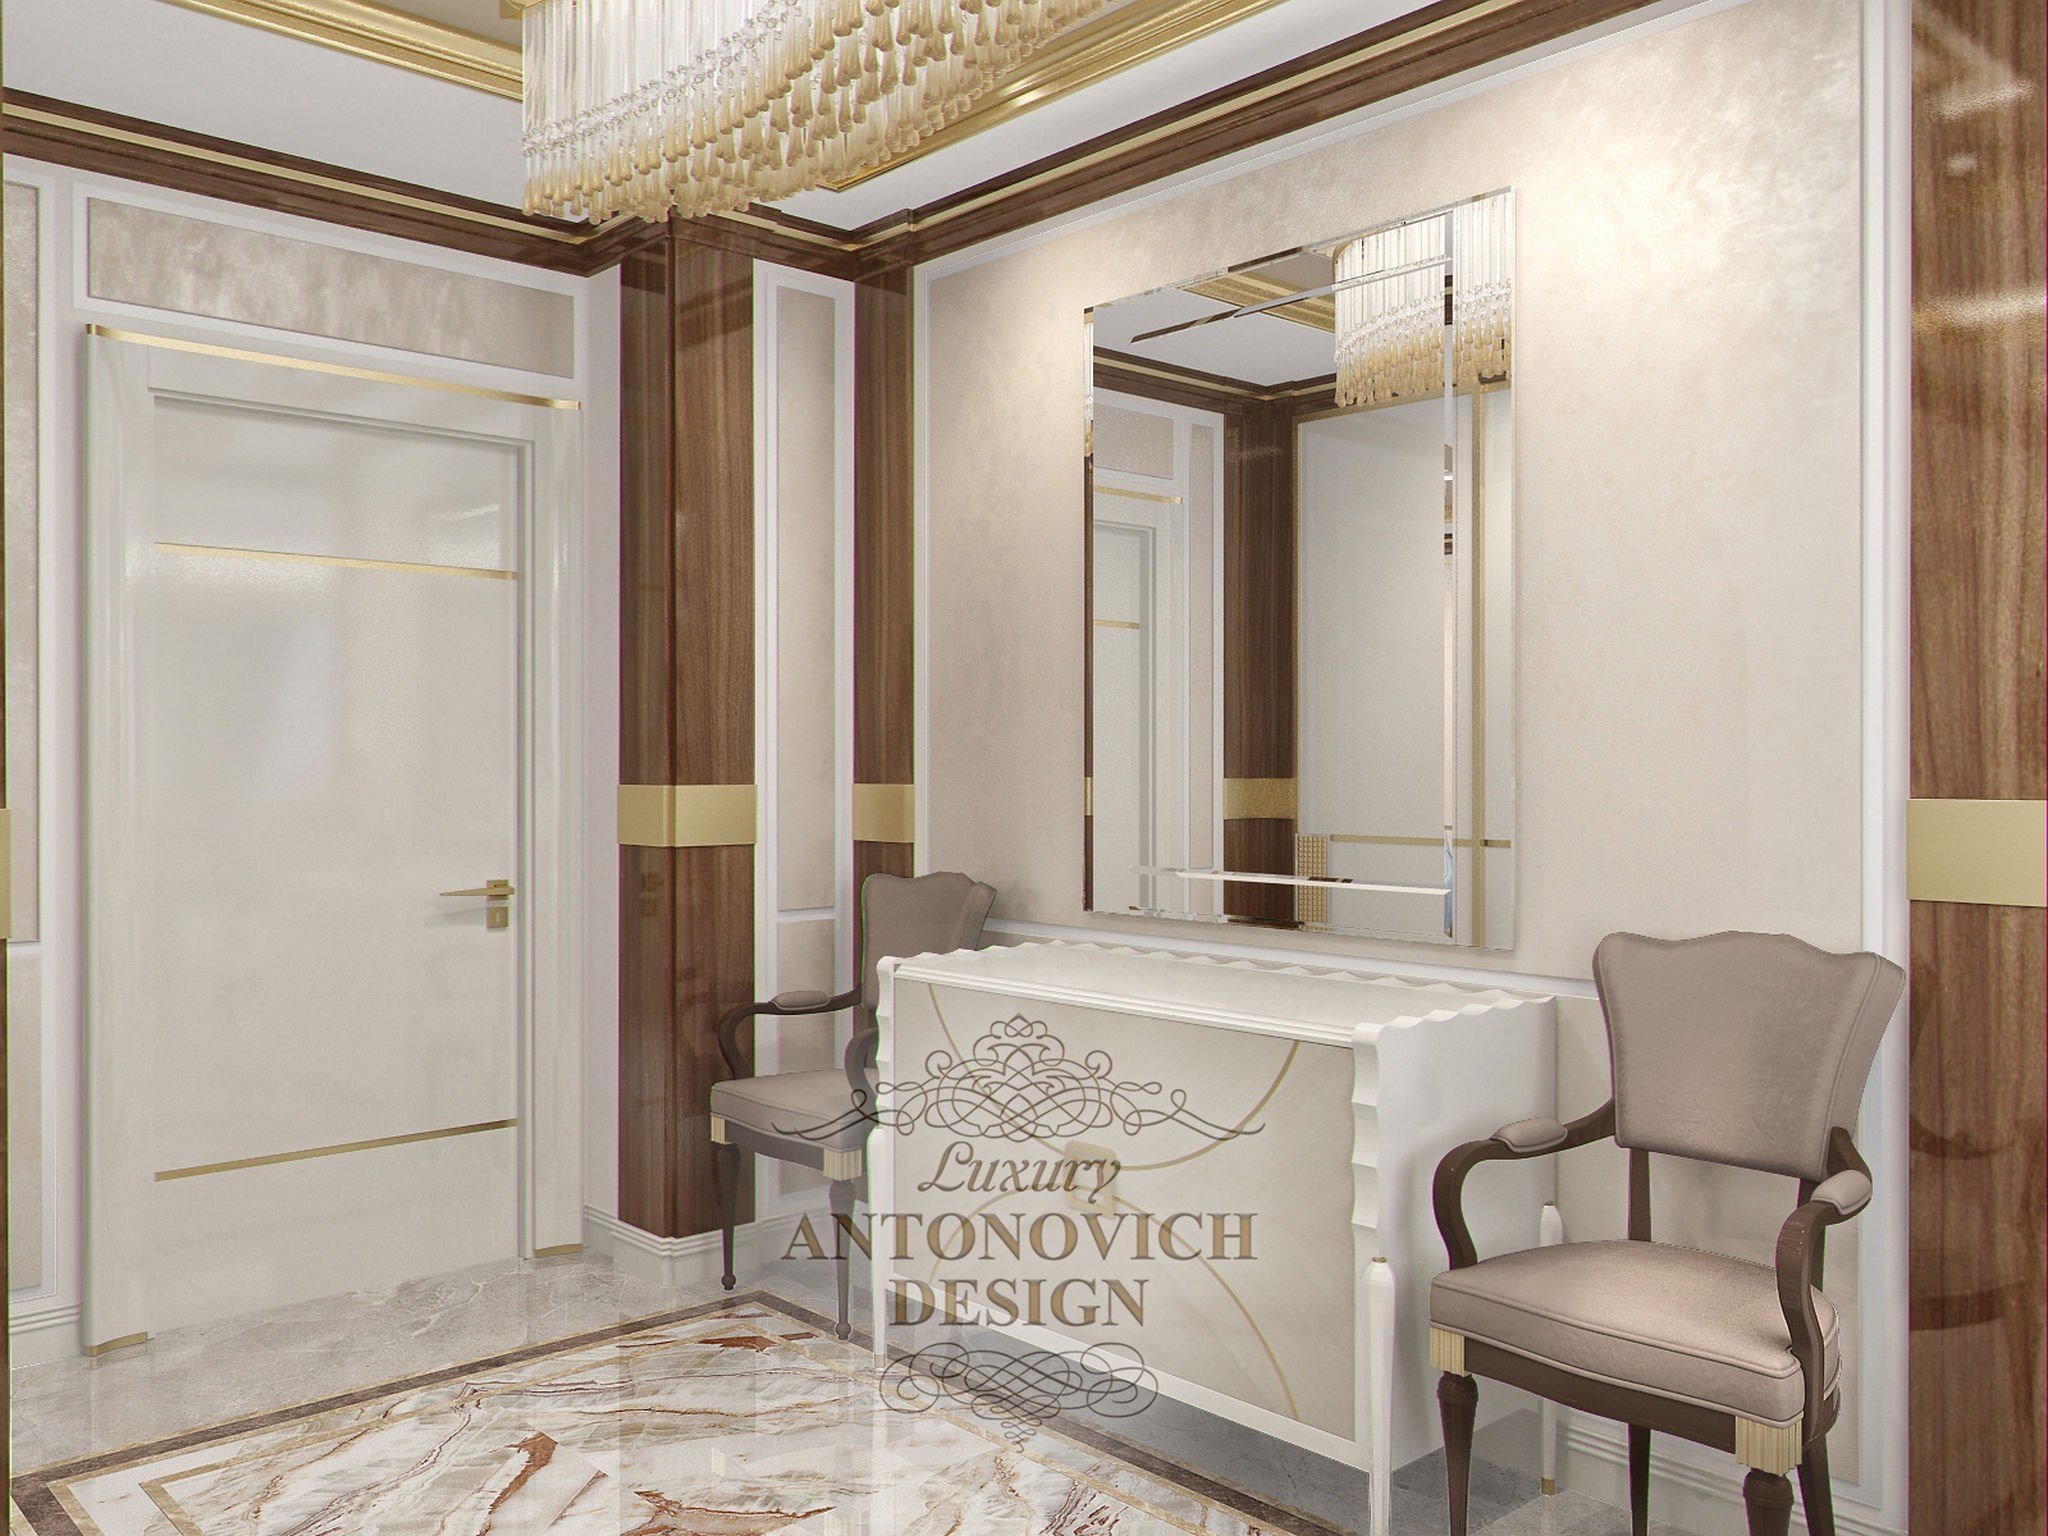 Проект холла с выходом в гостиную от студии элитных интерьеров Luxury ANTONOVICH DESIGN